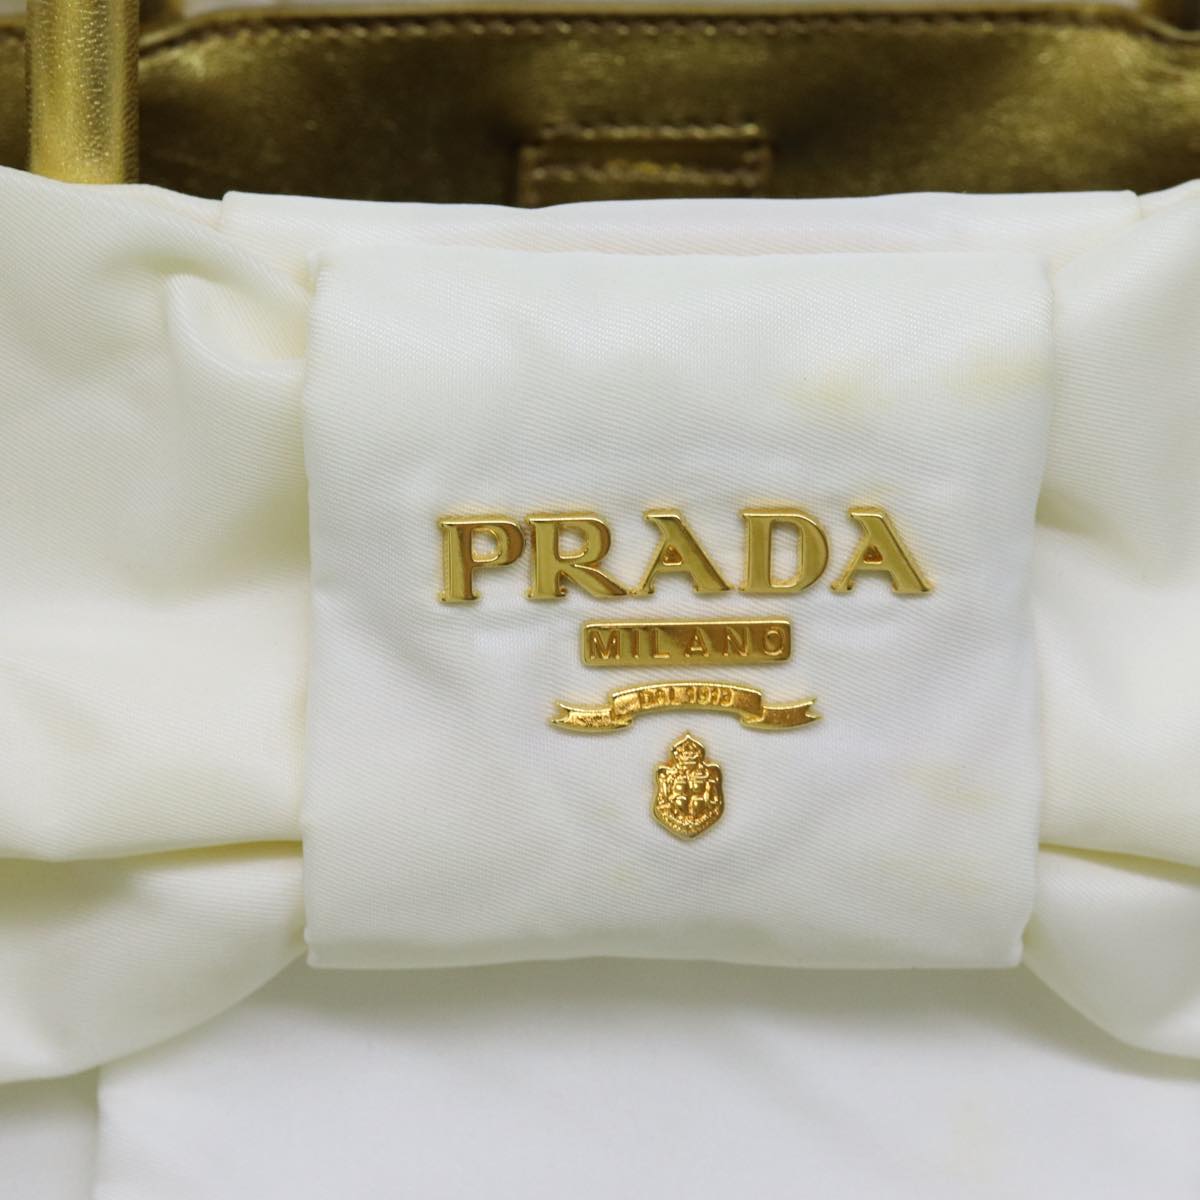 PRADA Hand Bag Nylon White Gold Auth 71016